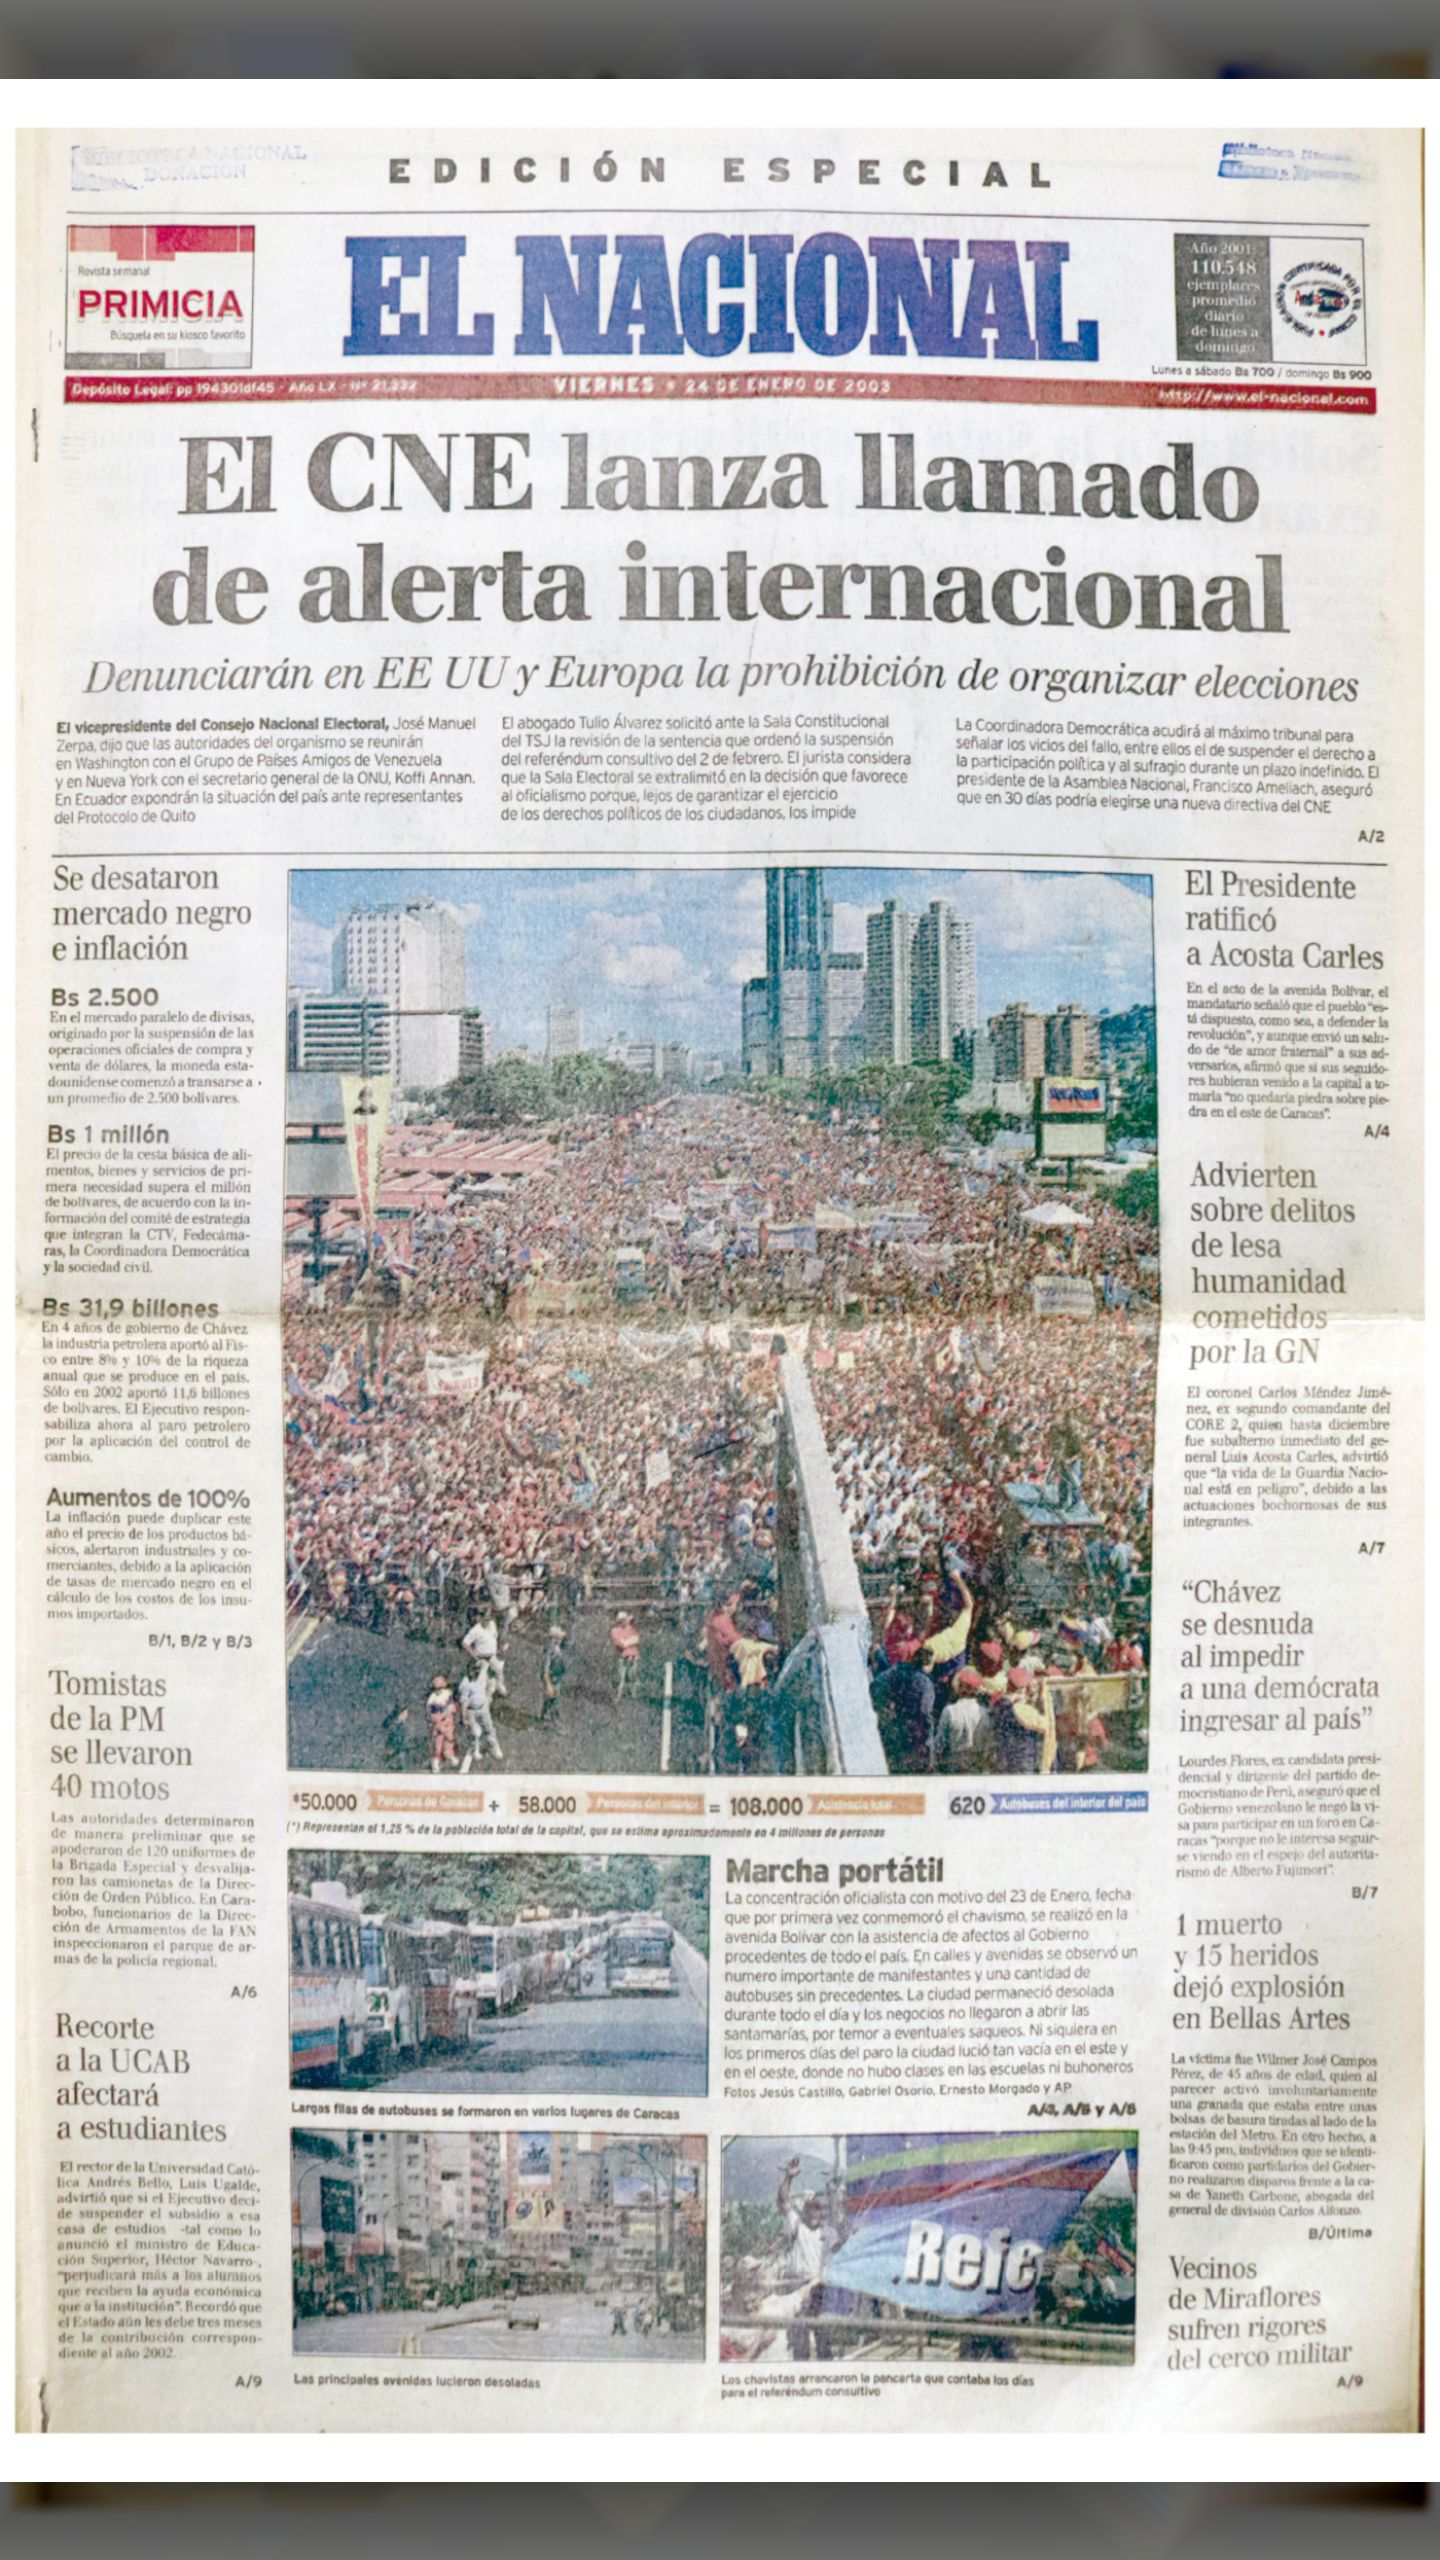 Marcha Portátil (El Nacional, viernes 24 de enero de 2003)